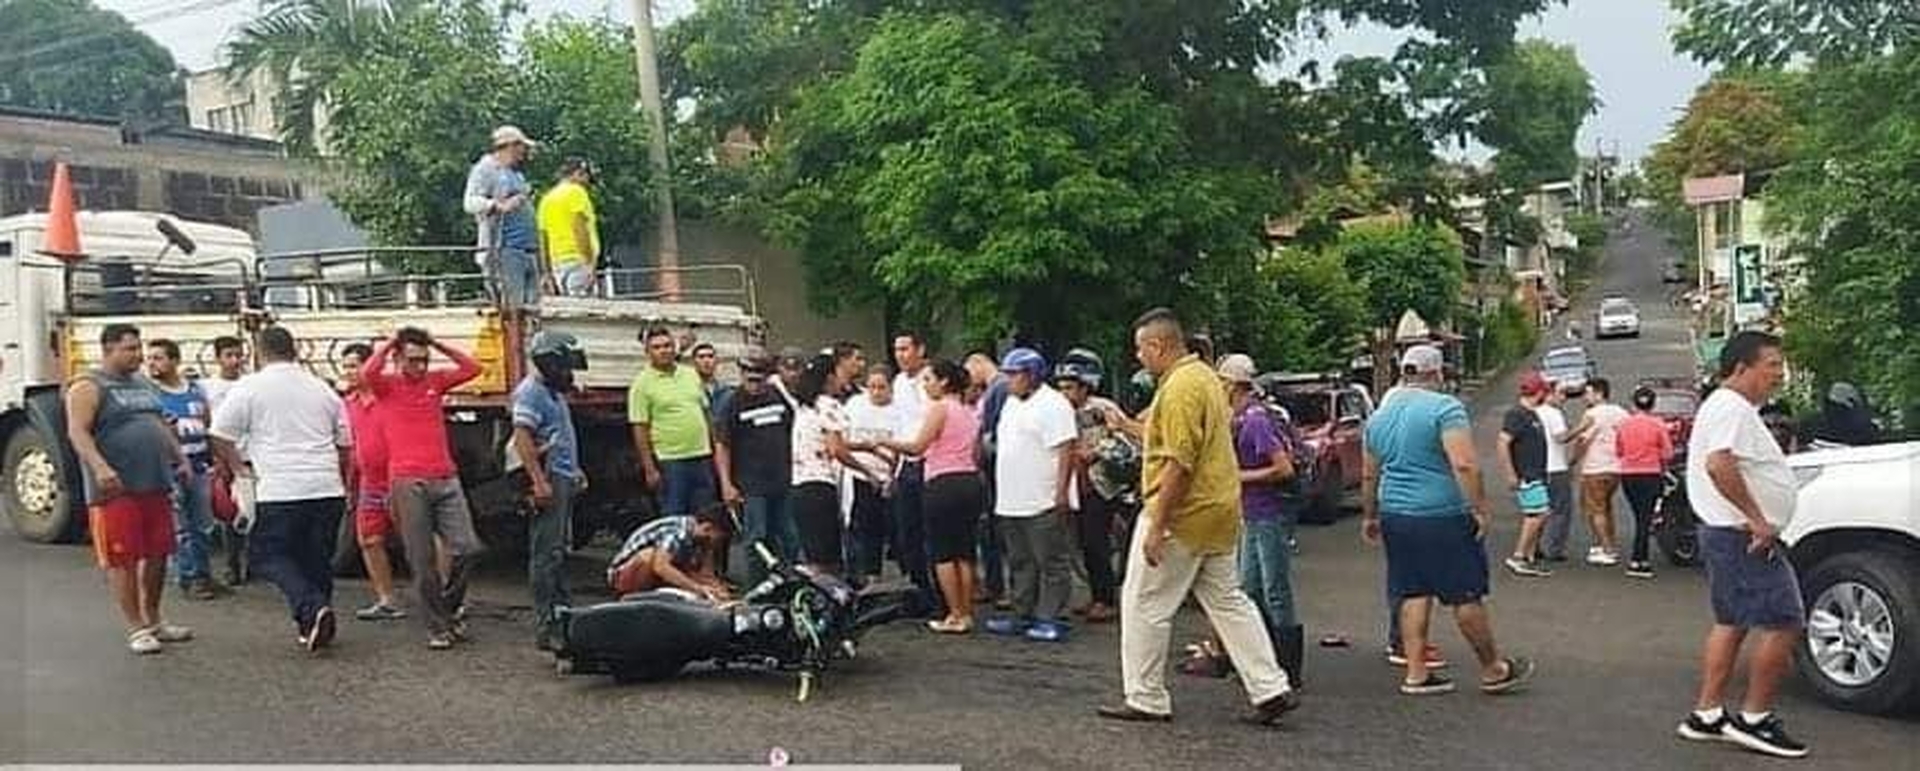  Una enfermera perdió la vida en un accidente de tránsito ocurrido el sábado en la ciudad de Juigalpa, dejando en la orfandad a sus gemelitas